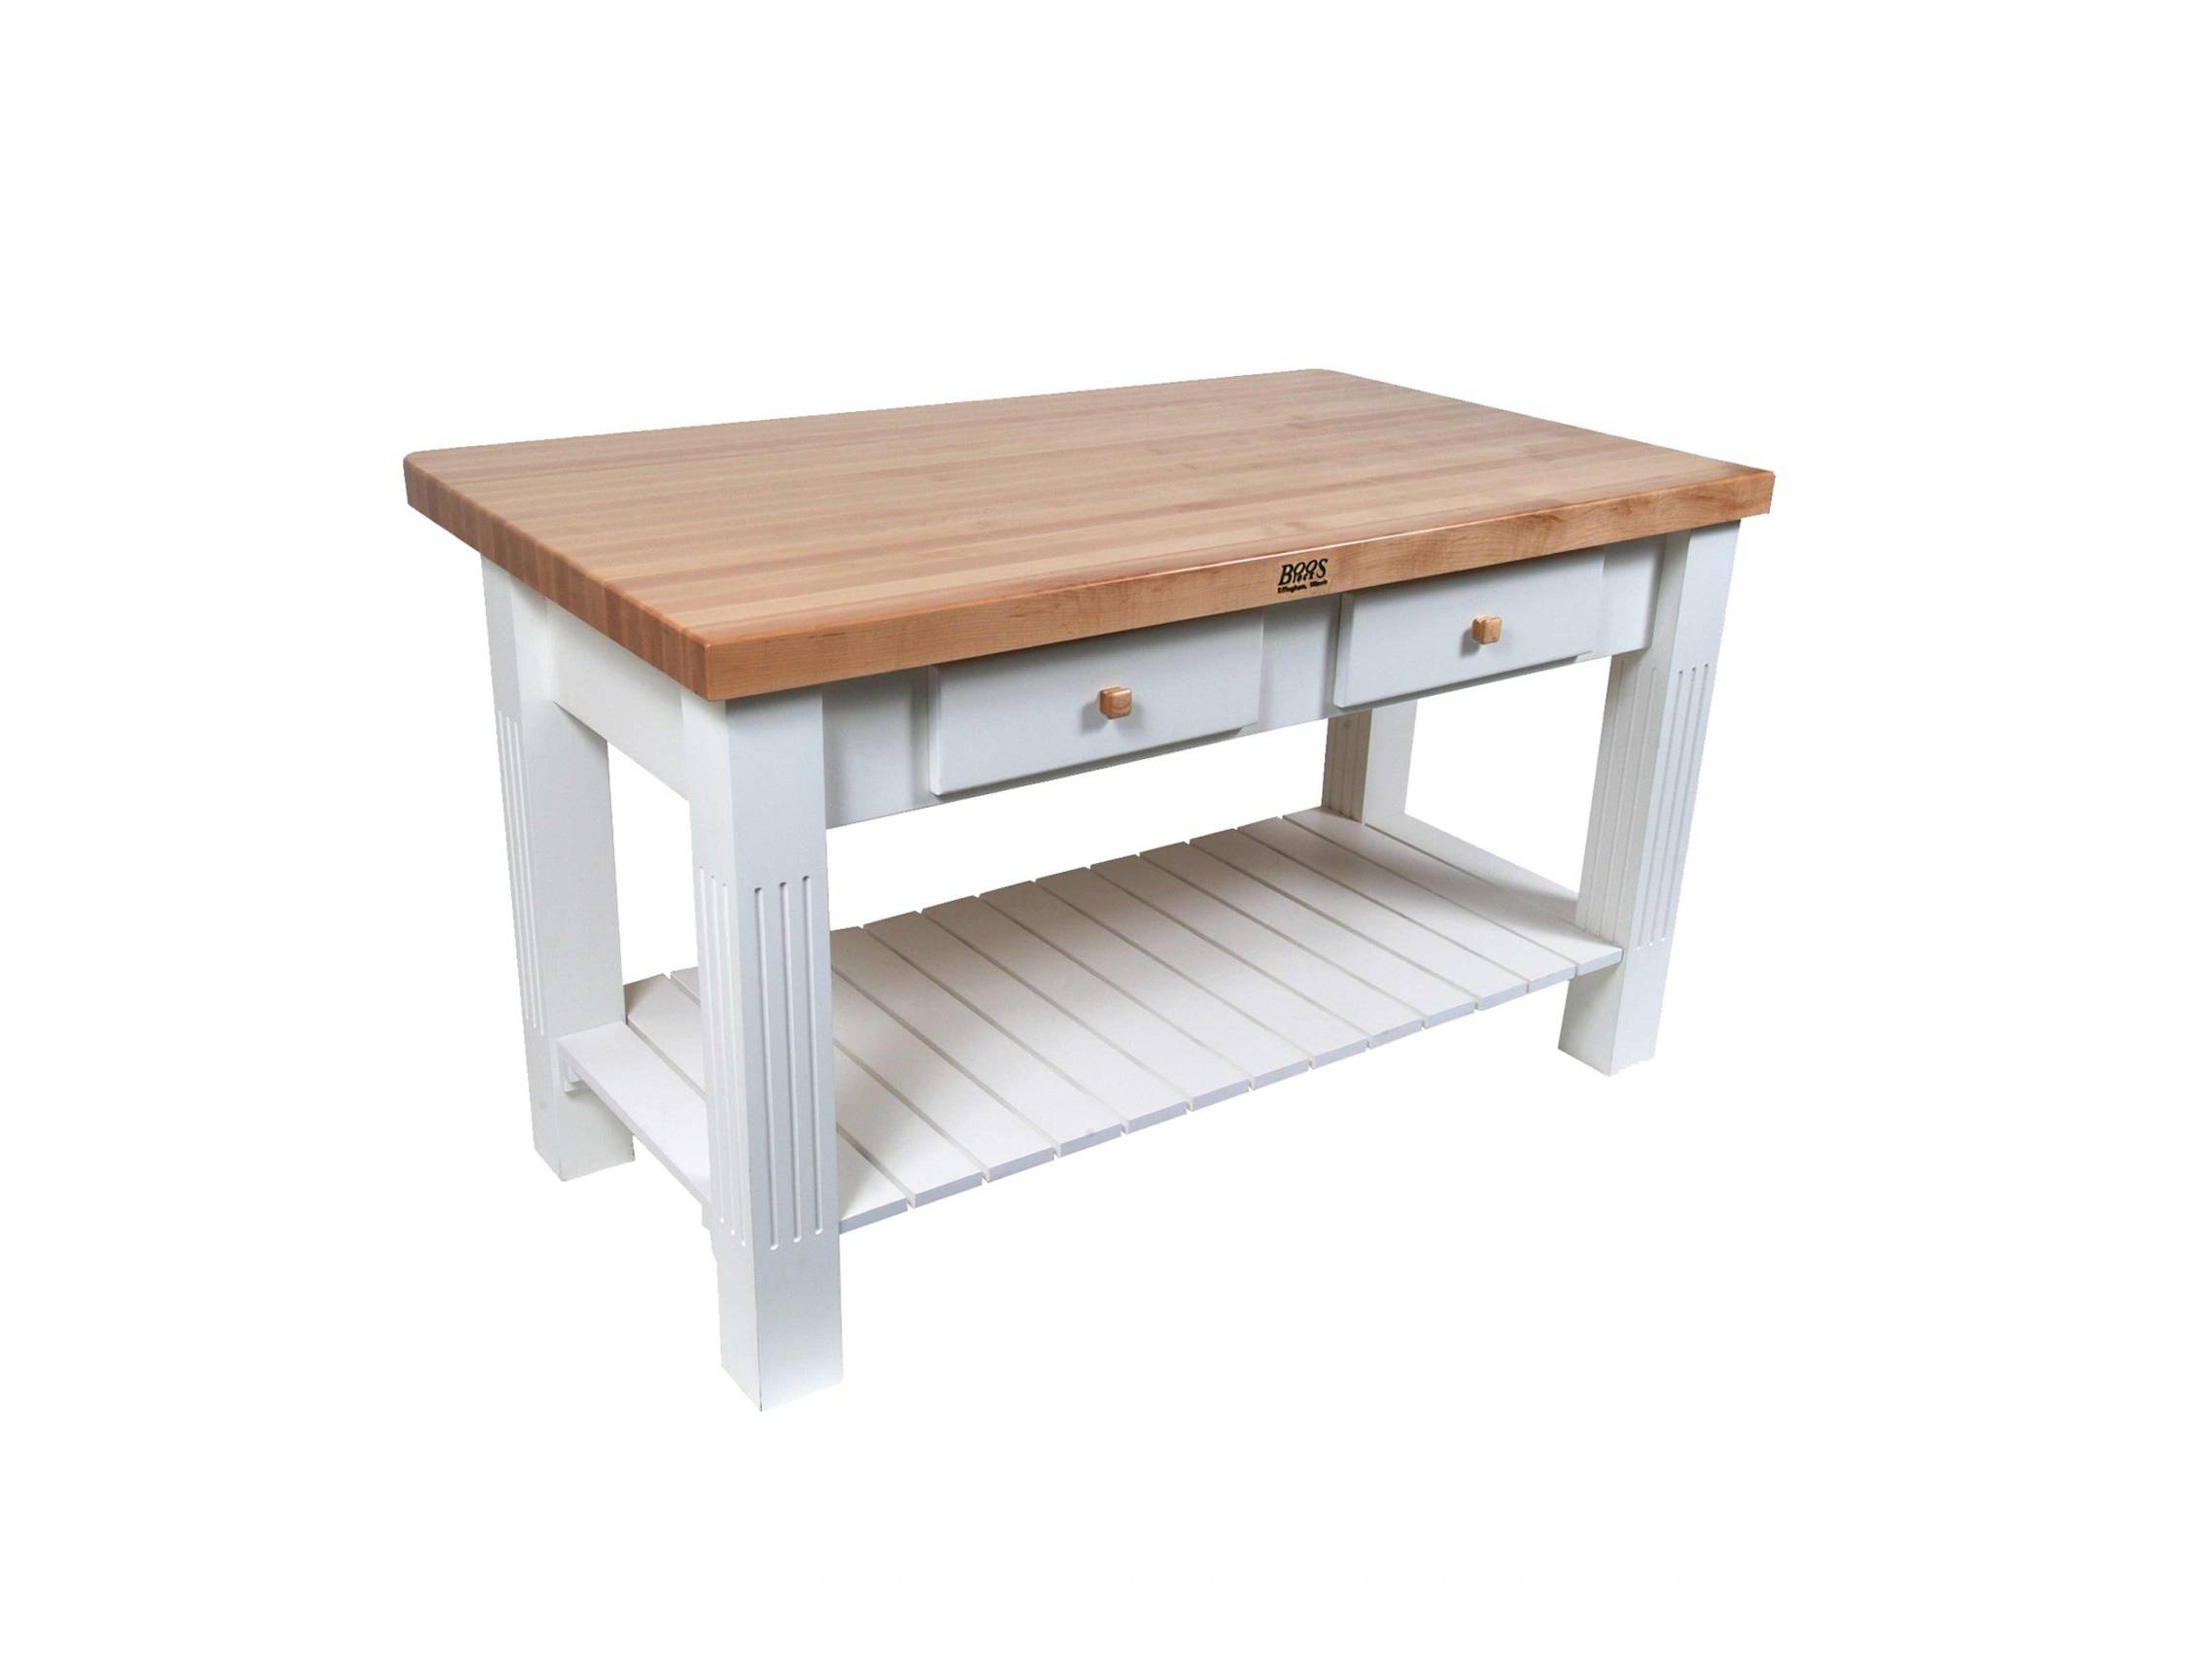 Boos® Maple Grazzi Table mit Langholzplatte inkl. umklappbarem Plattenteil (ca. 20cm), unterer Ablage und Utensilienschubladen 33